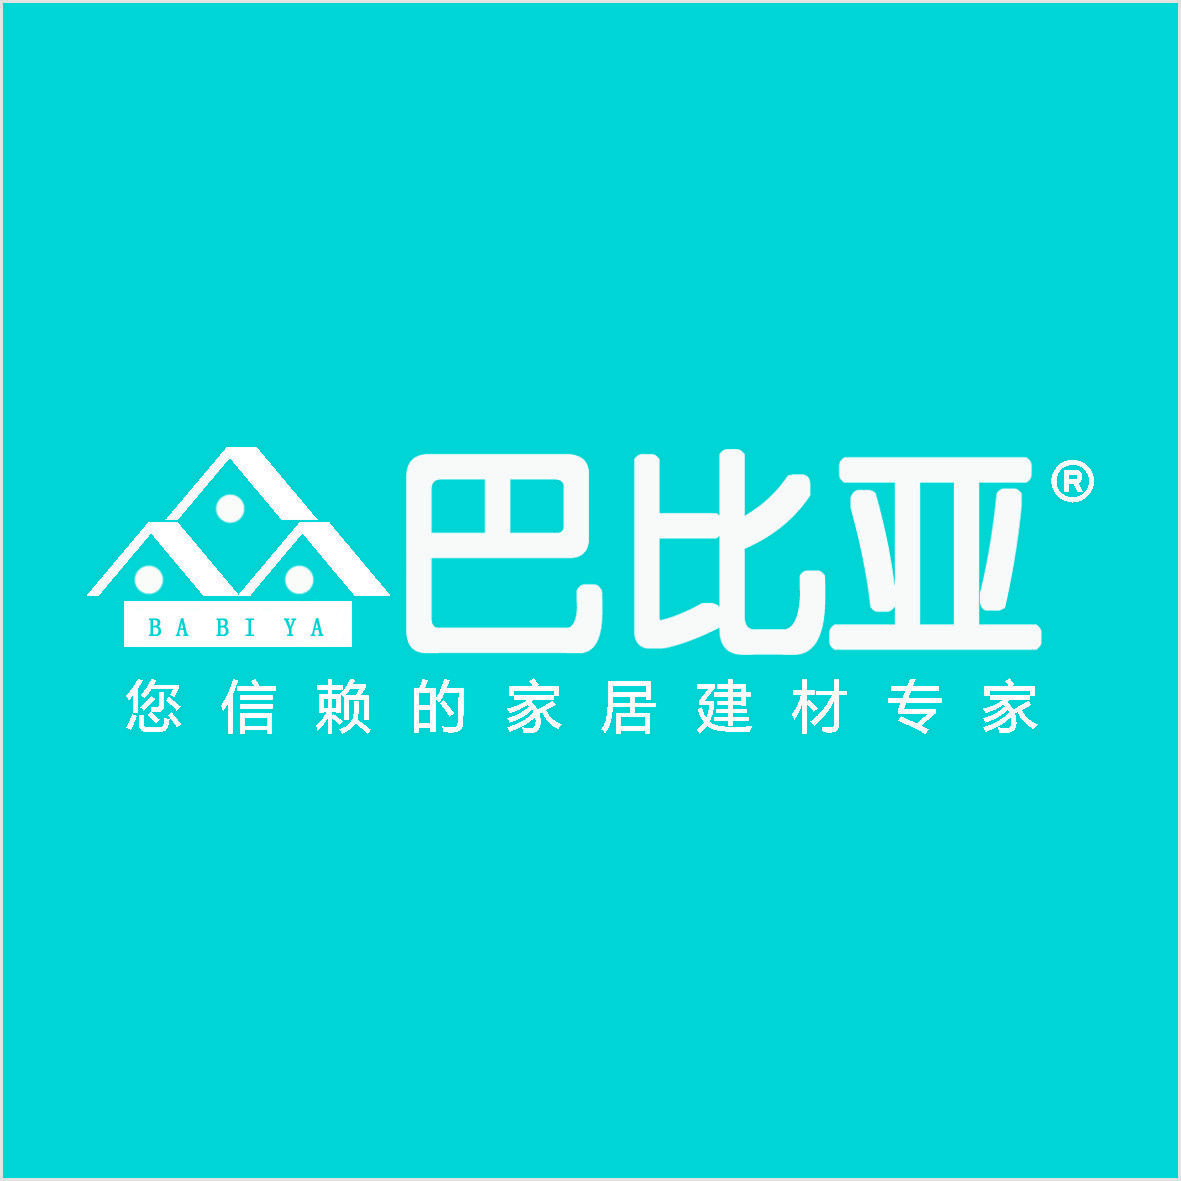 深圳市巴比亚装饰用品有限公司logo